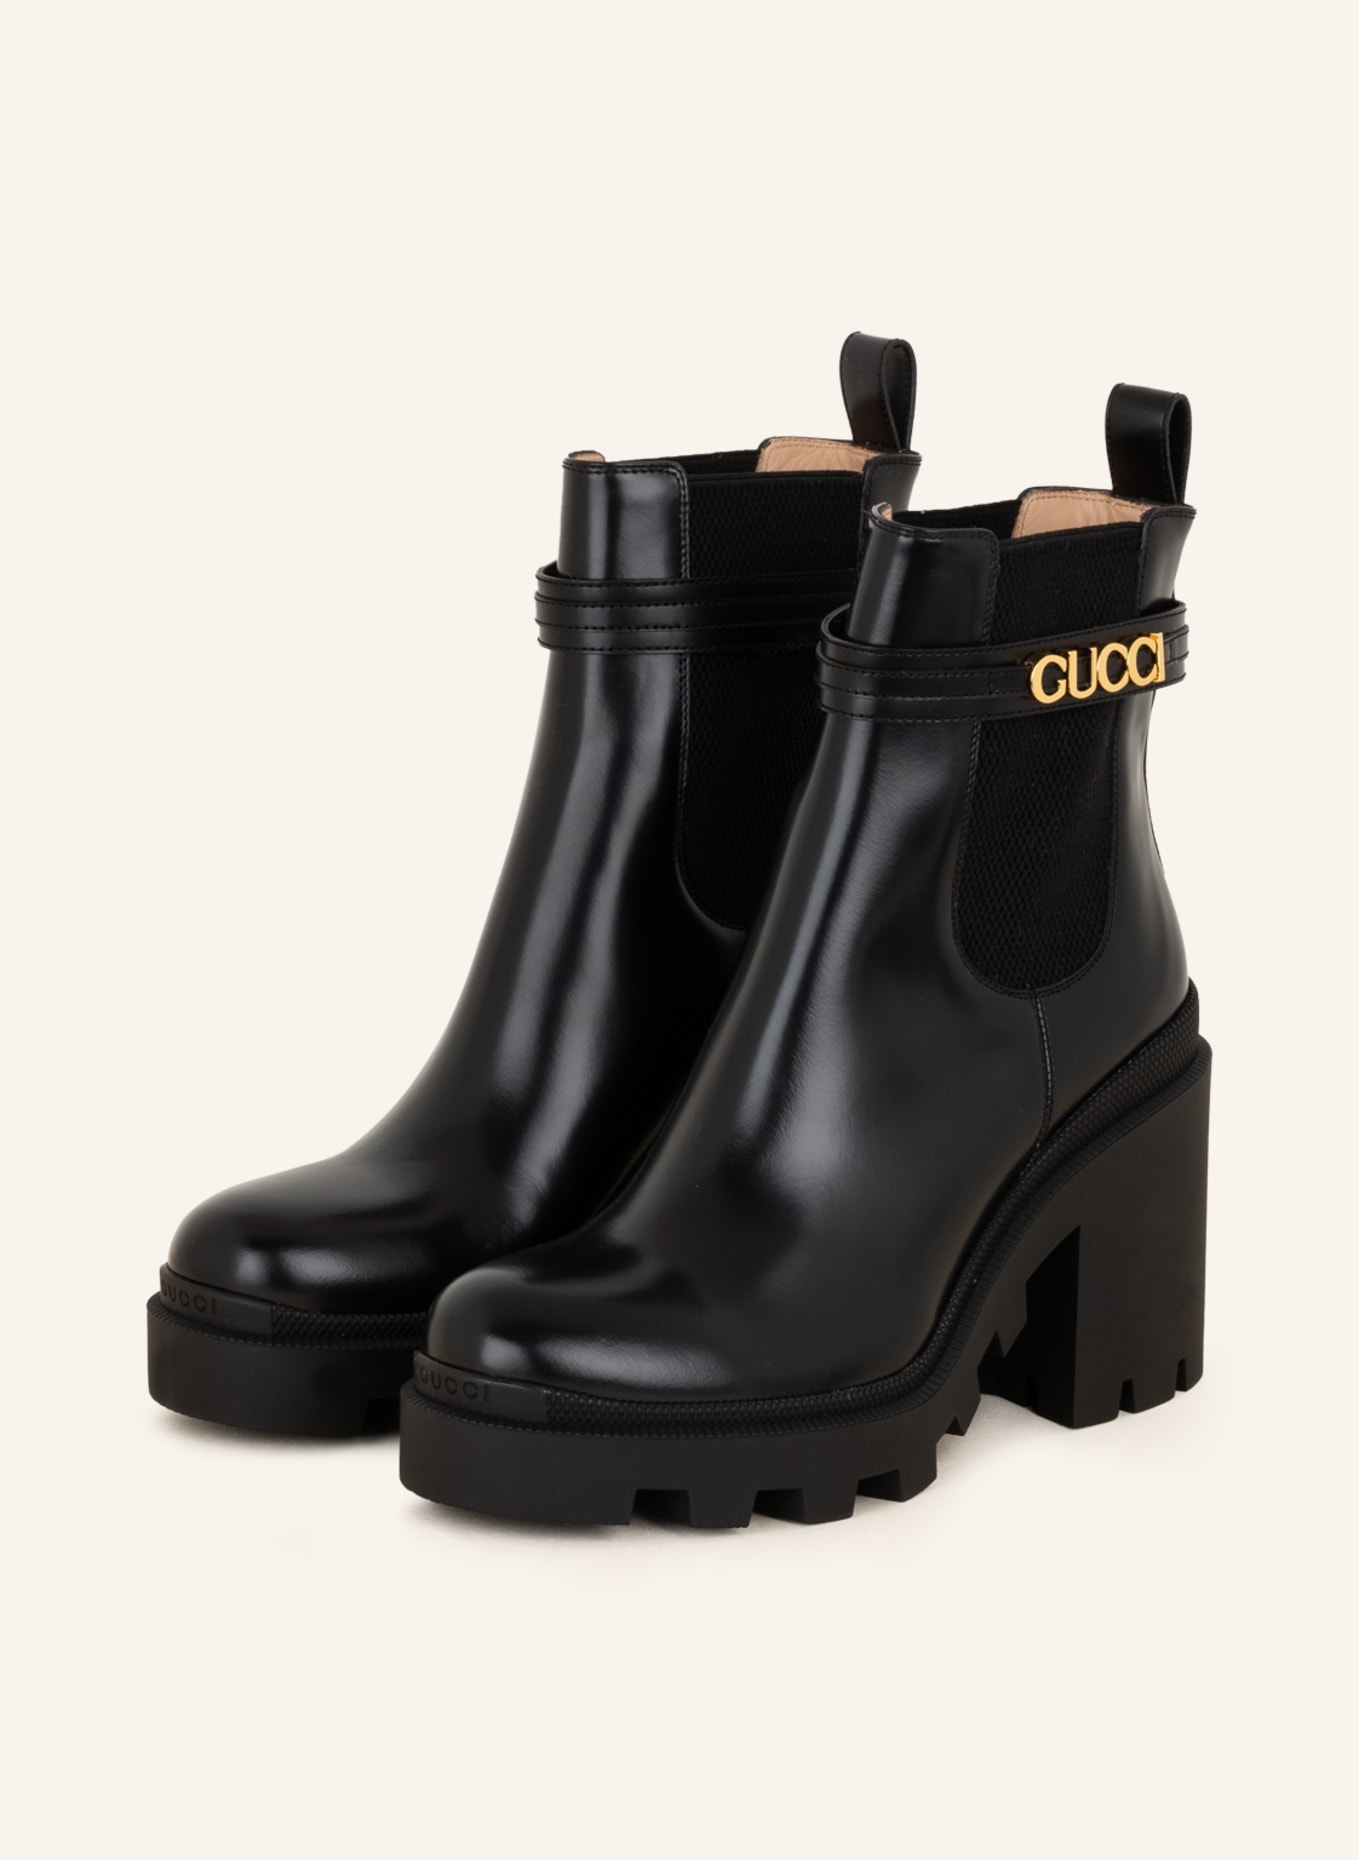 GUCCI Chelsea-Boots, Farbe: 1000 BLACK/BLACK (Bild 1)